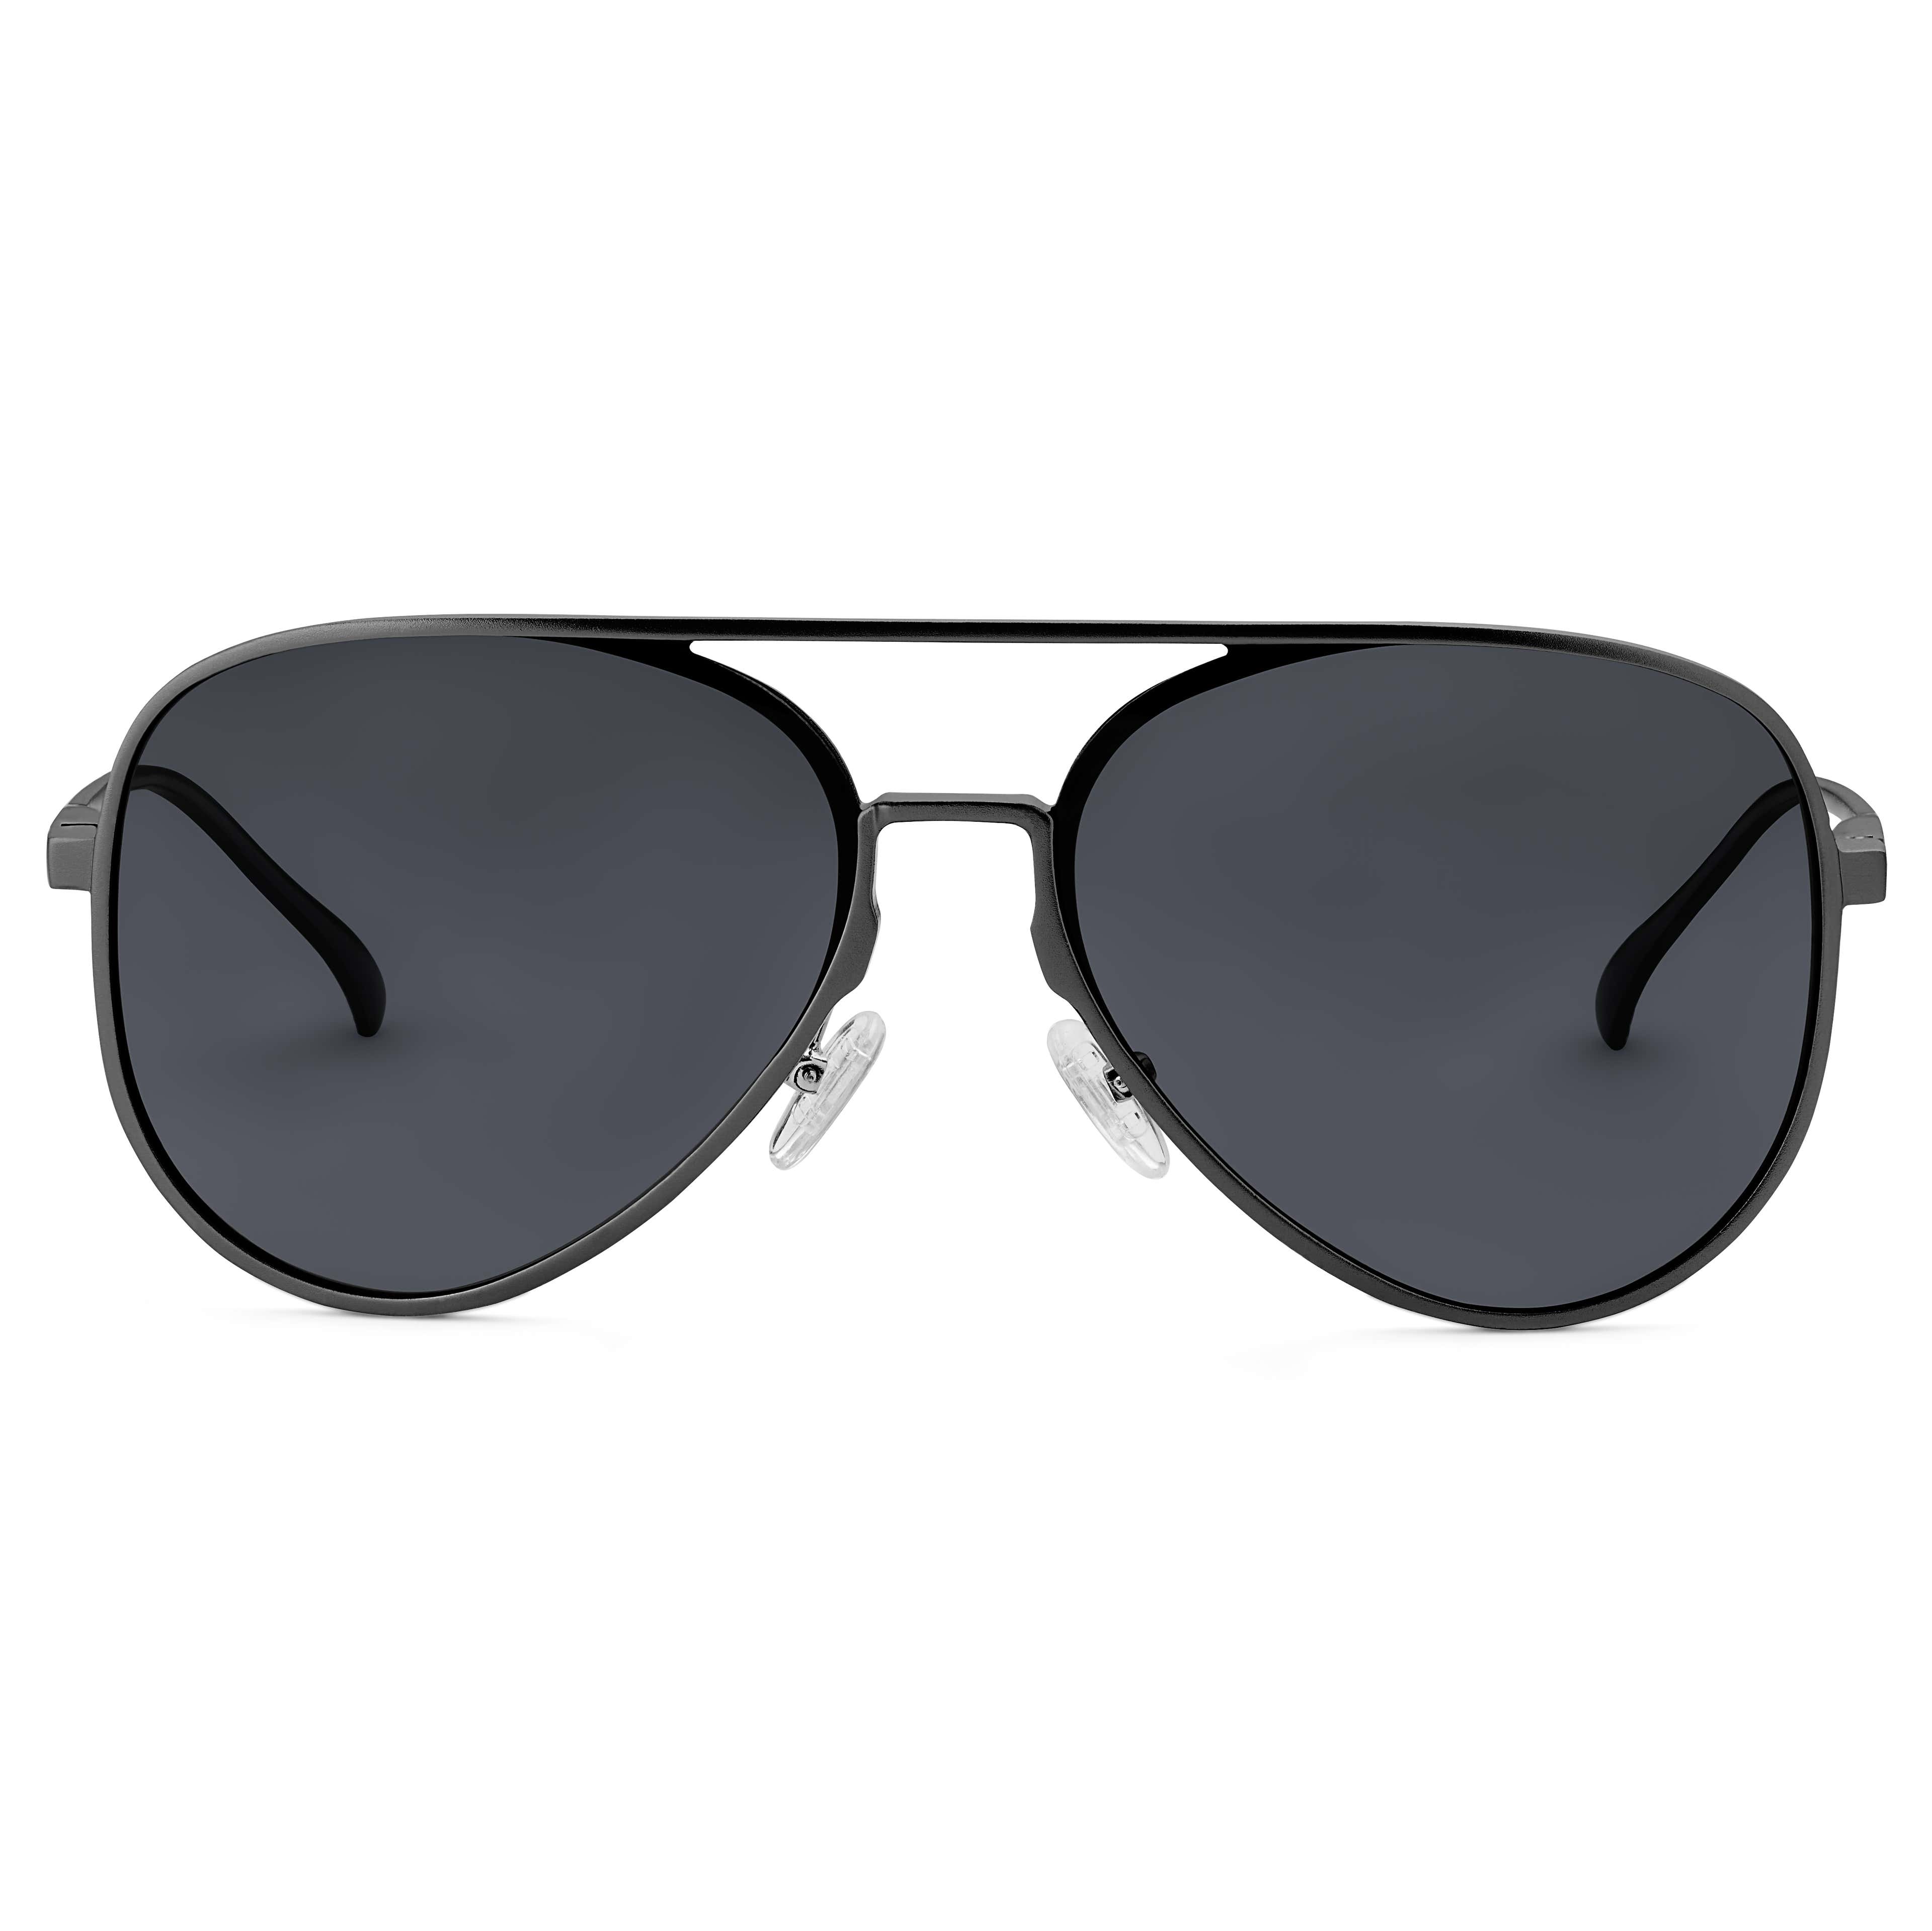 Black Smoke Polarised Aviator Sunglasses - 2 - hover gallery